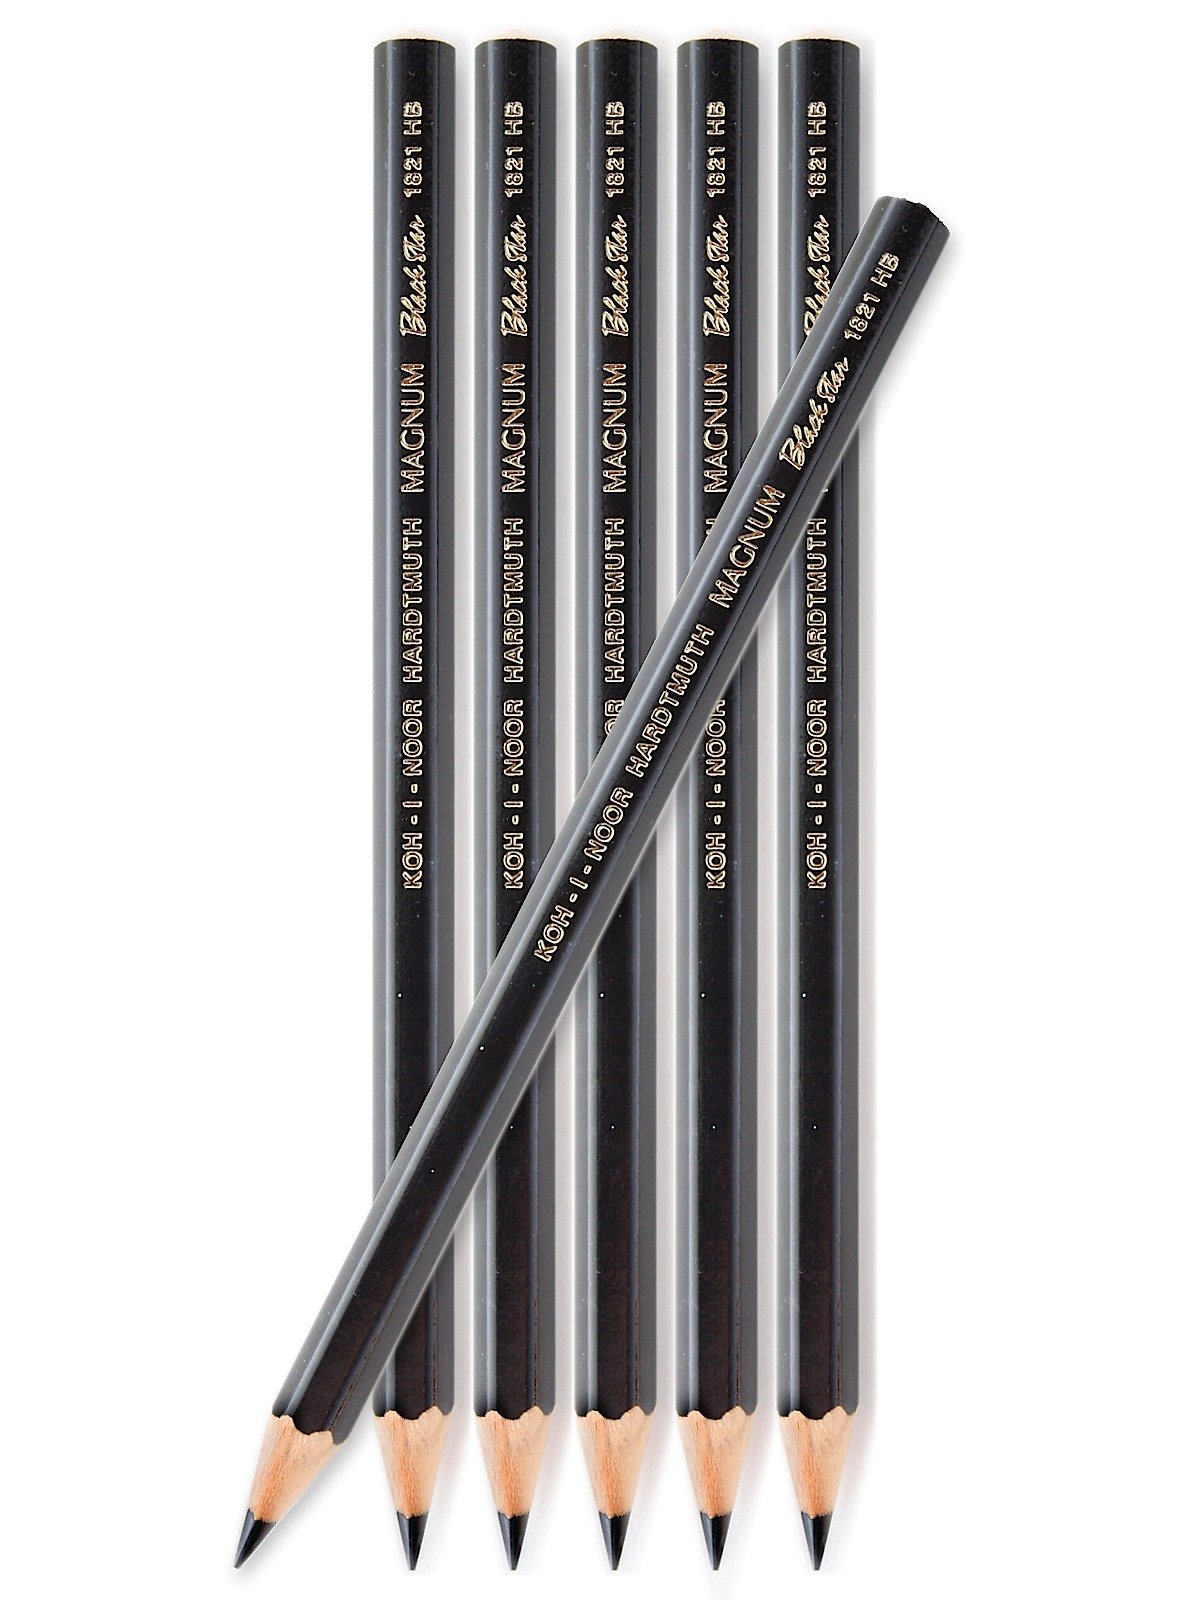 Koh-I-Noor - Magnum Black Star Graphite Pencil